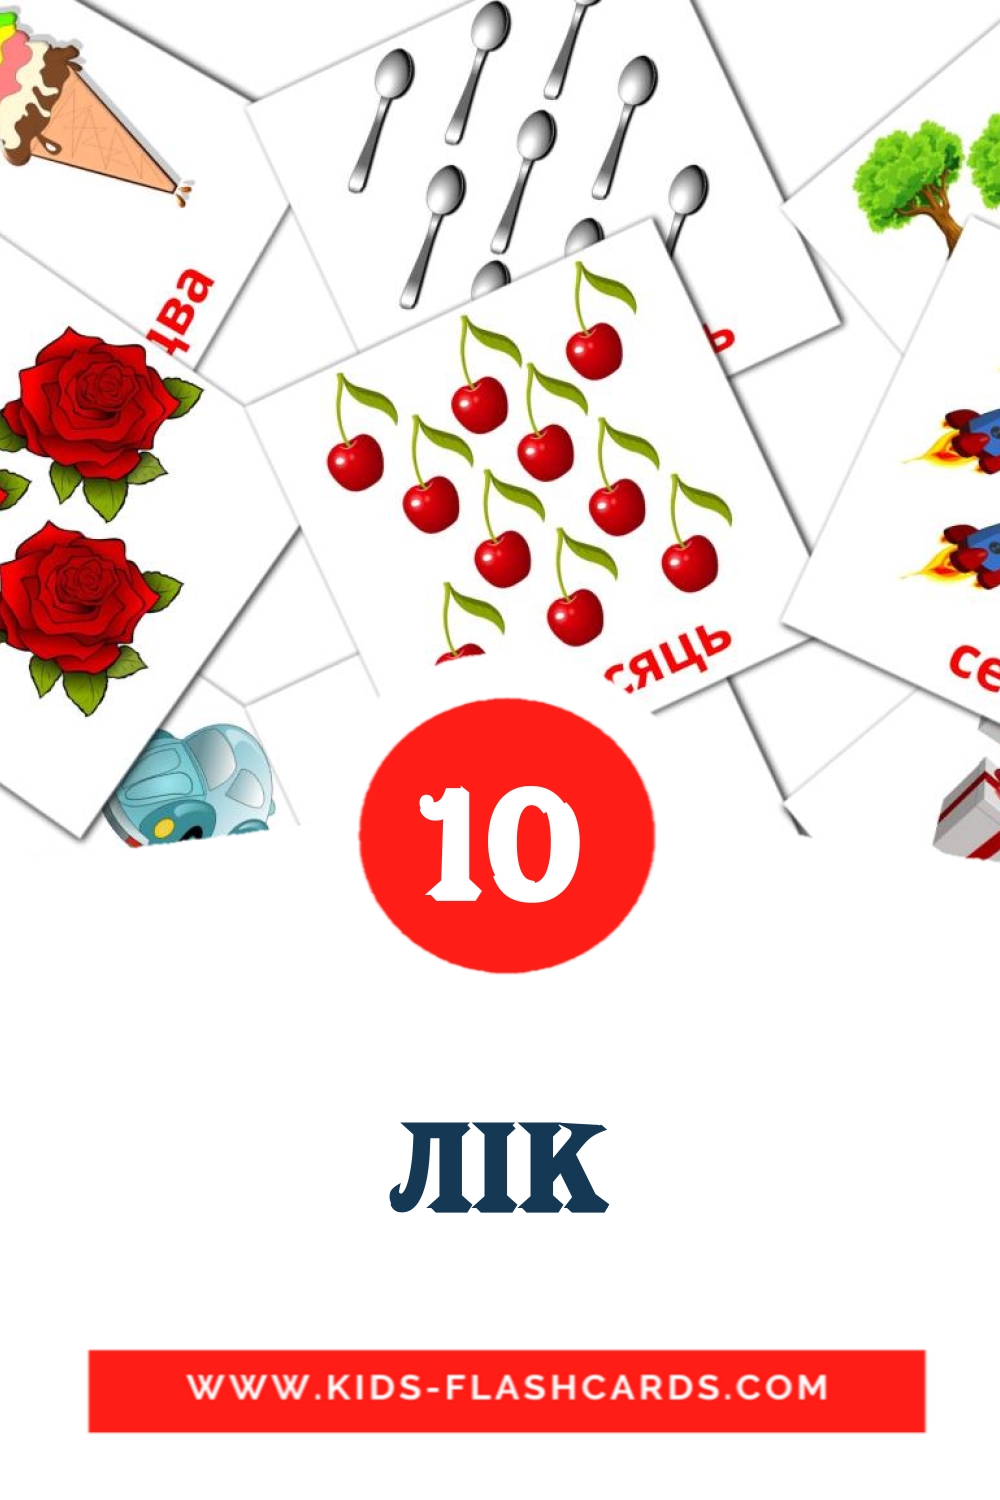 10 Cartões com Imagens de Лік para Jardim de Infância em bielorrusso